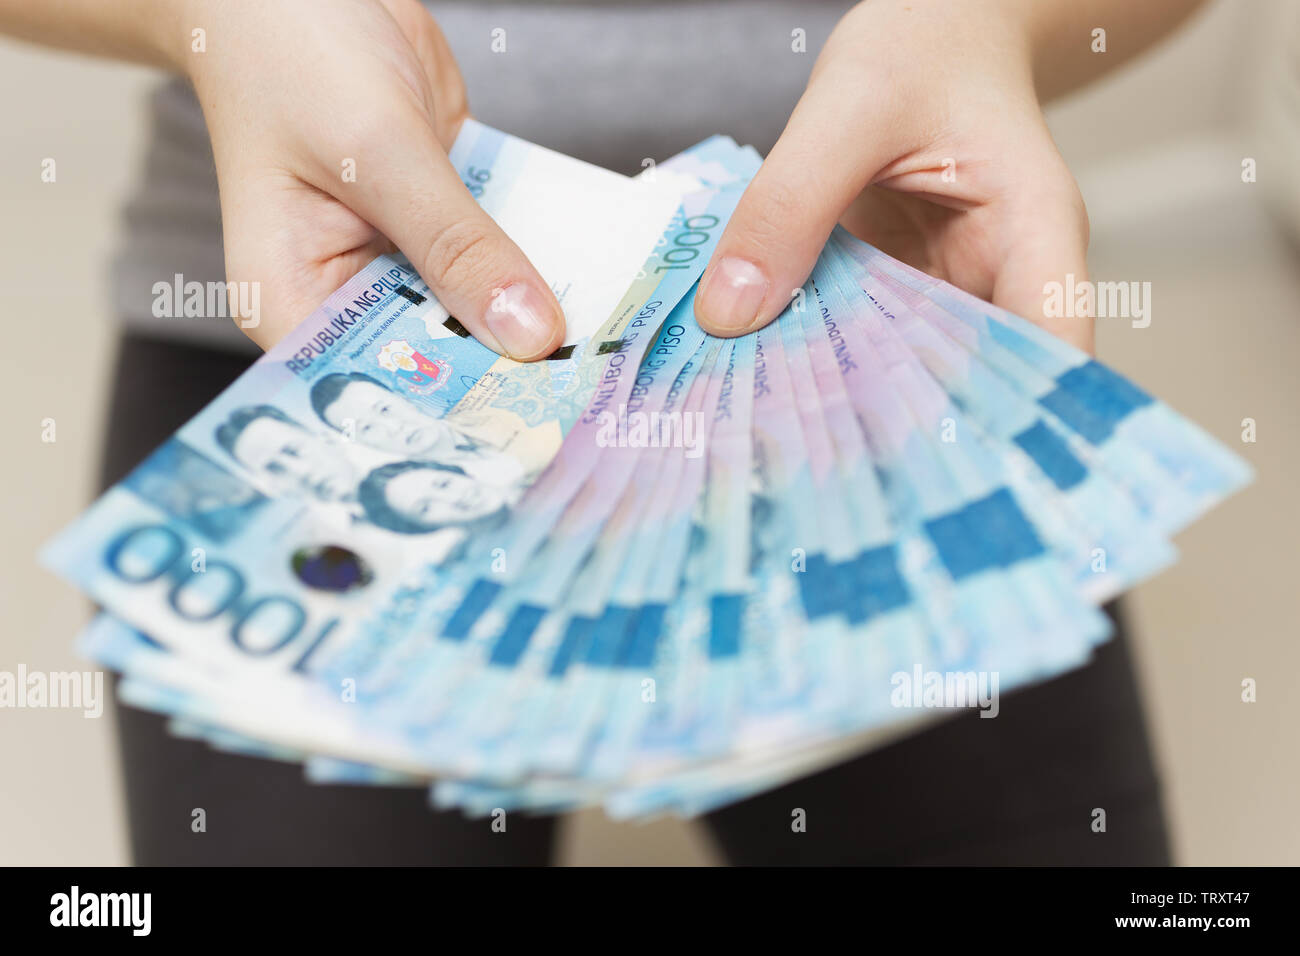 Hände halten Gehalt oder Payment Bundle von Bargeld von tausend philippinischen Peso, als wenn sein Reich. Zeigen Sie, Rechnungen bezahlen oder Bestechung geben. Stockfoto